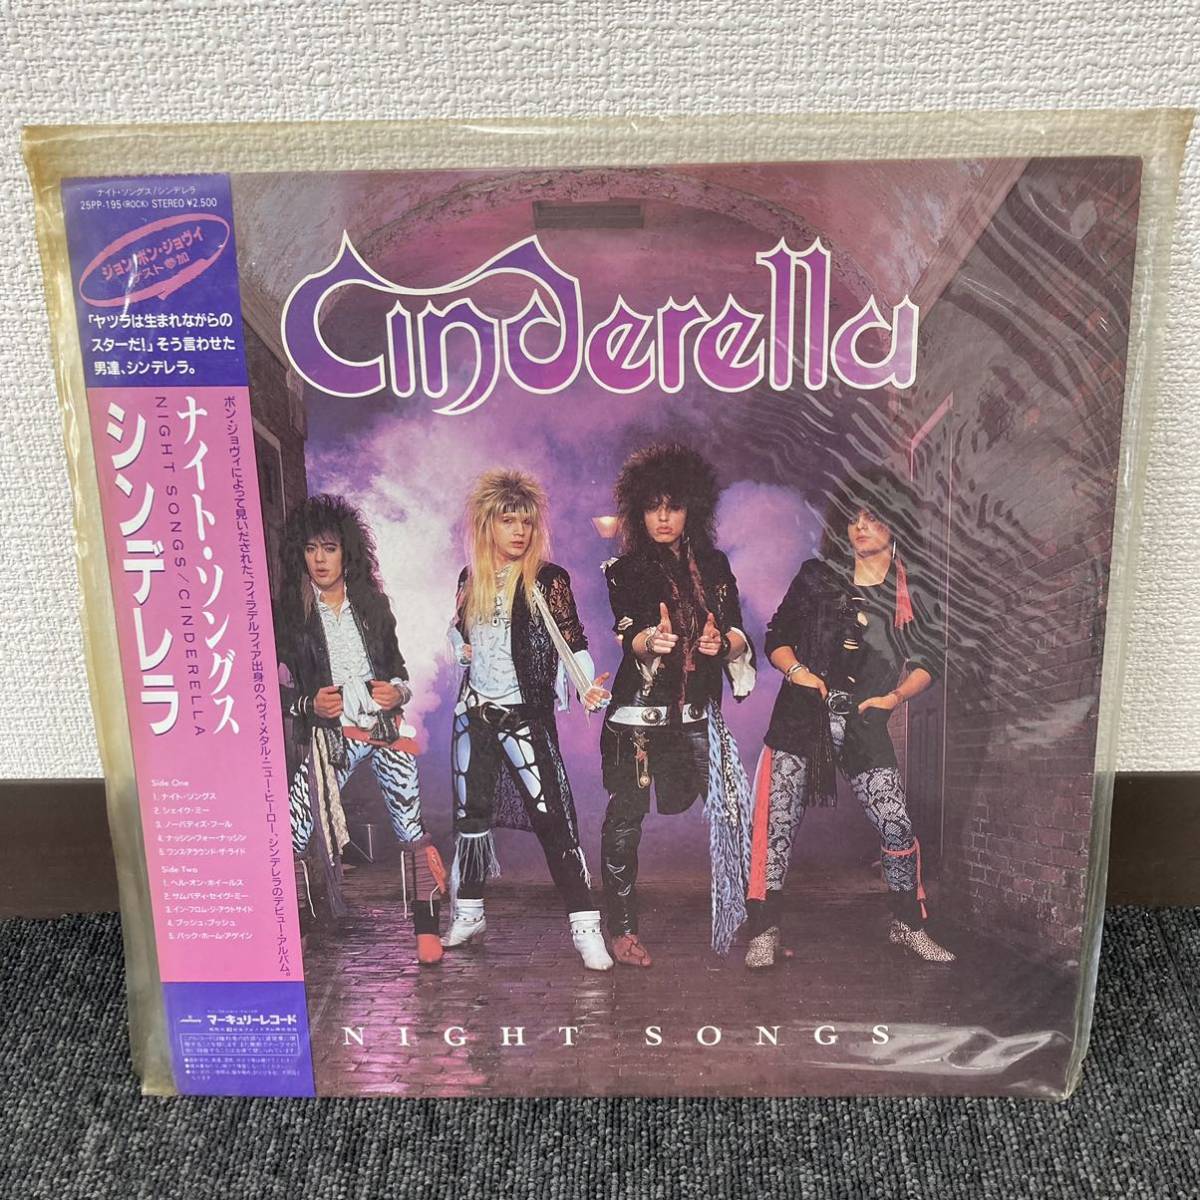 Yahoo!オークション -「cinderella night songs」(ハードロック